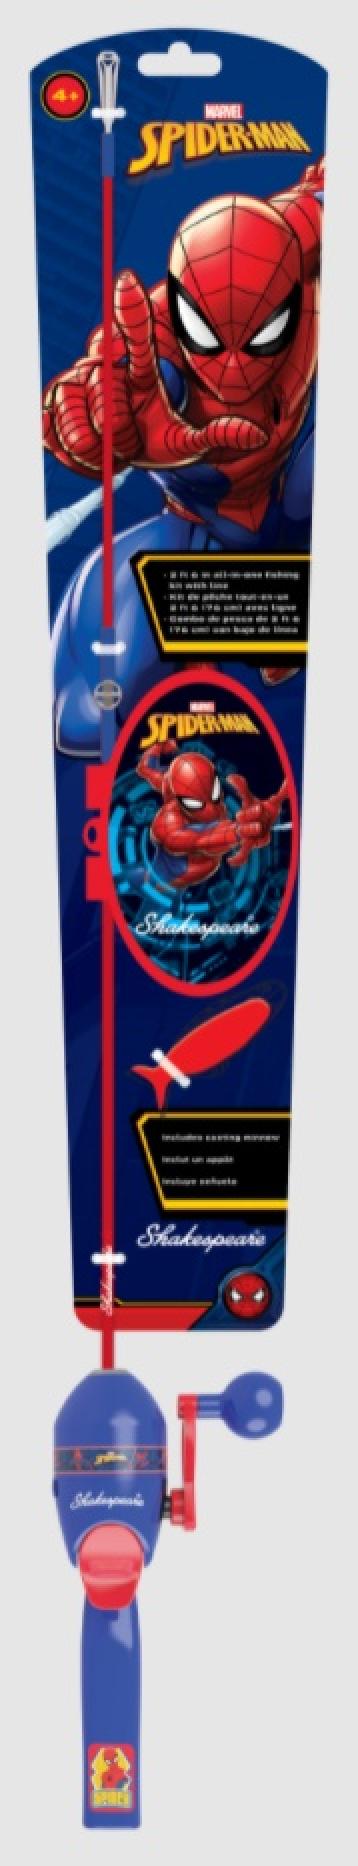 Shakespeare Spiderman Kit